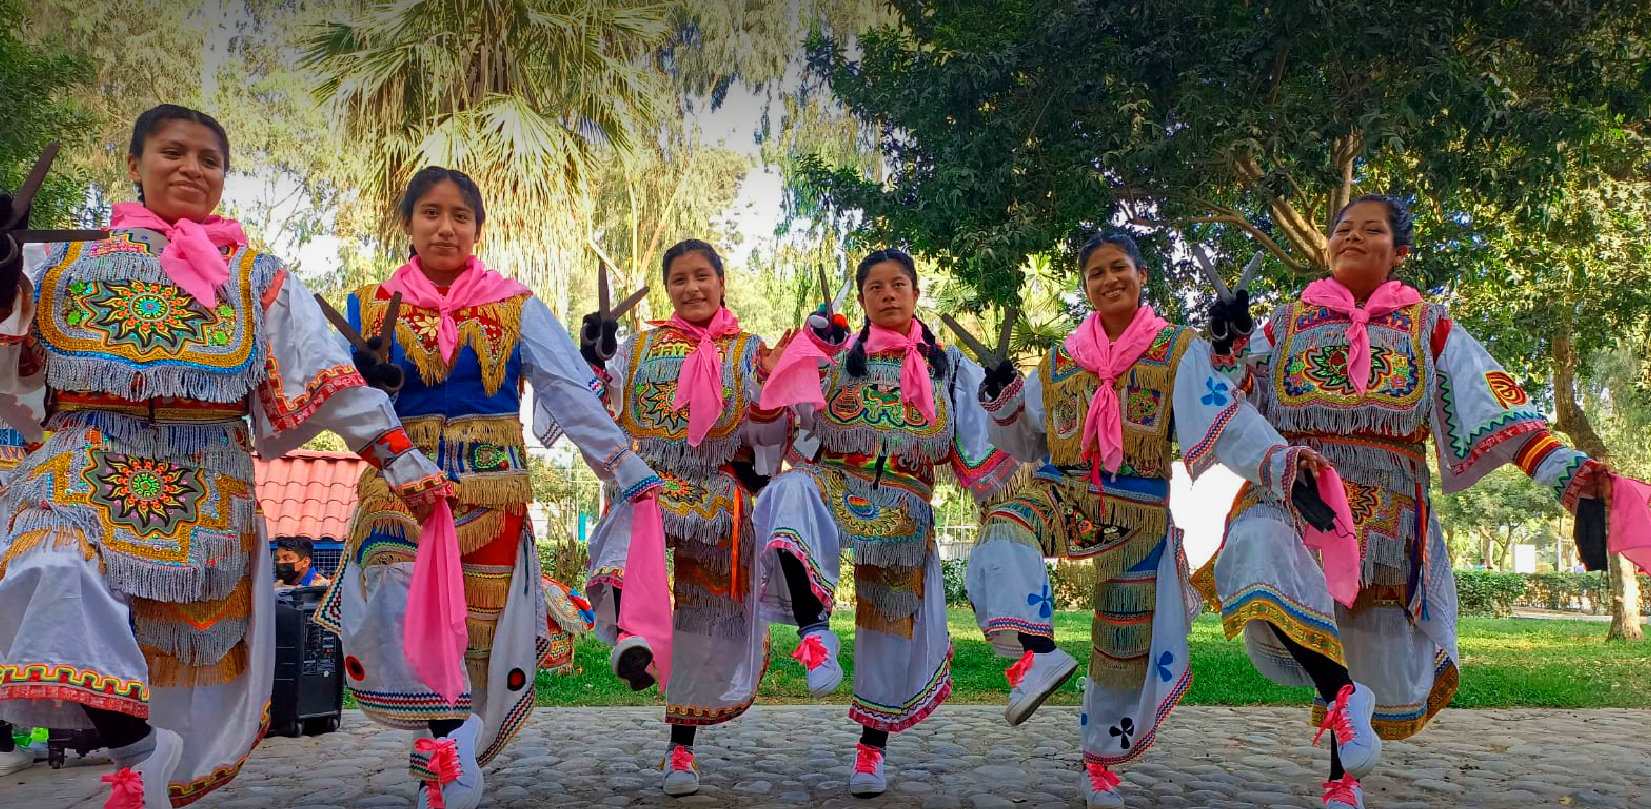 Warmi danzaq, Mujeres danzantes de tijeras de Ayacucho